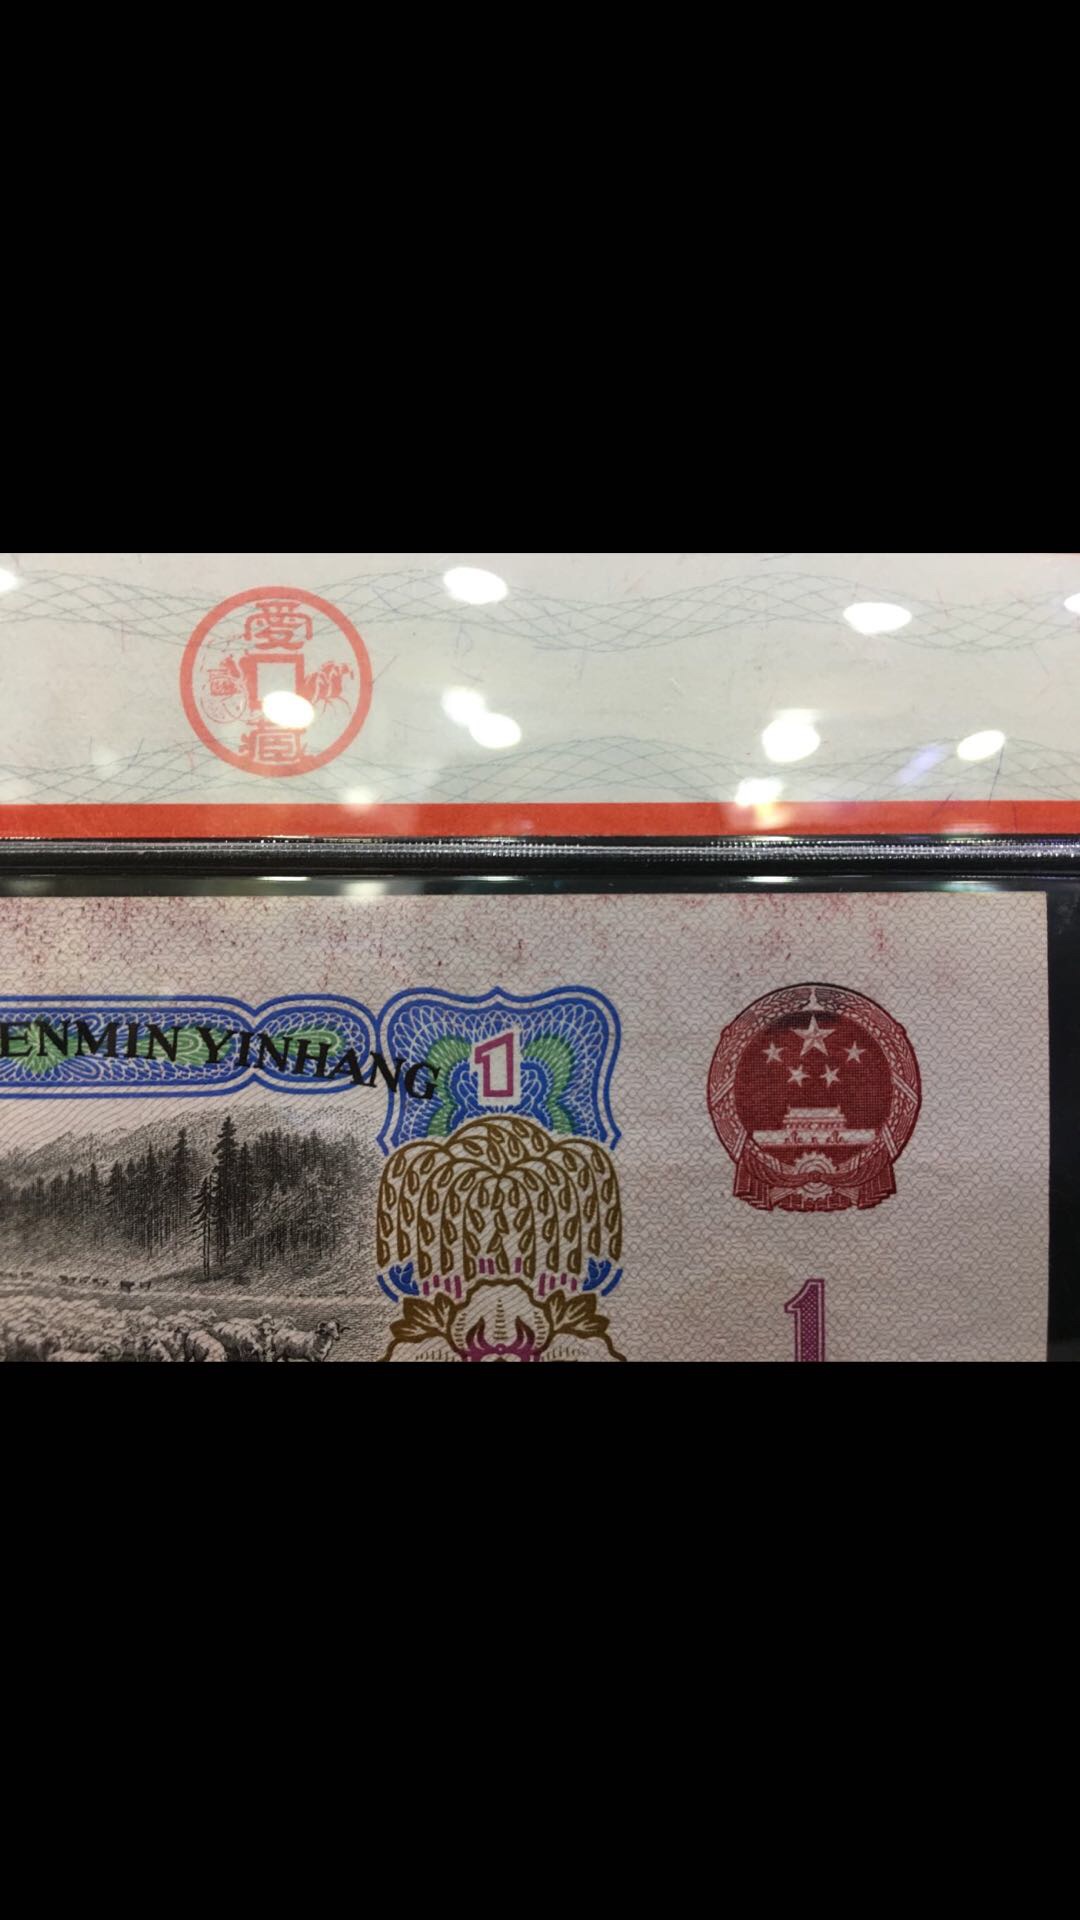 人民币1元背面图片